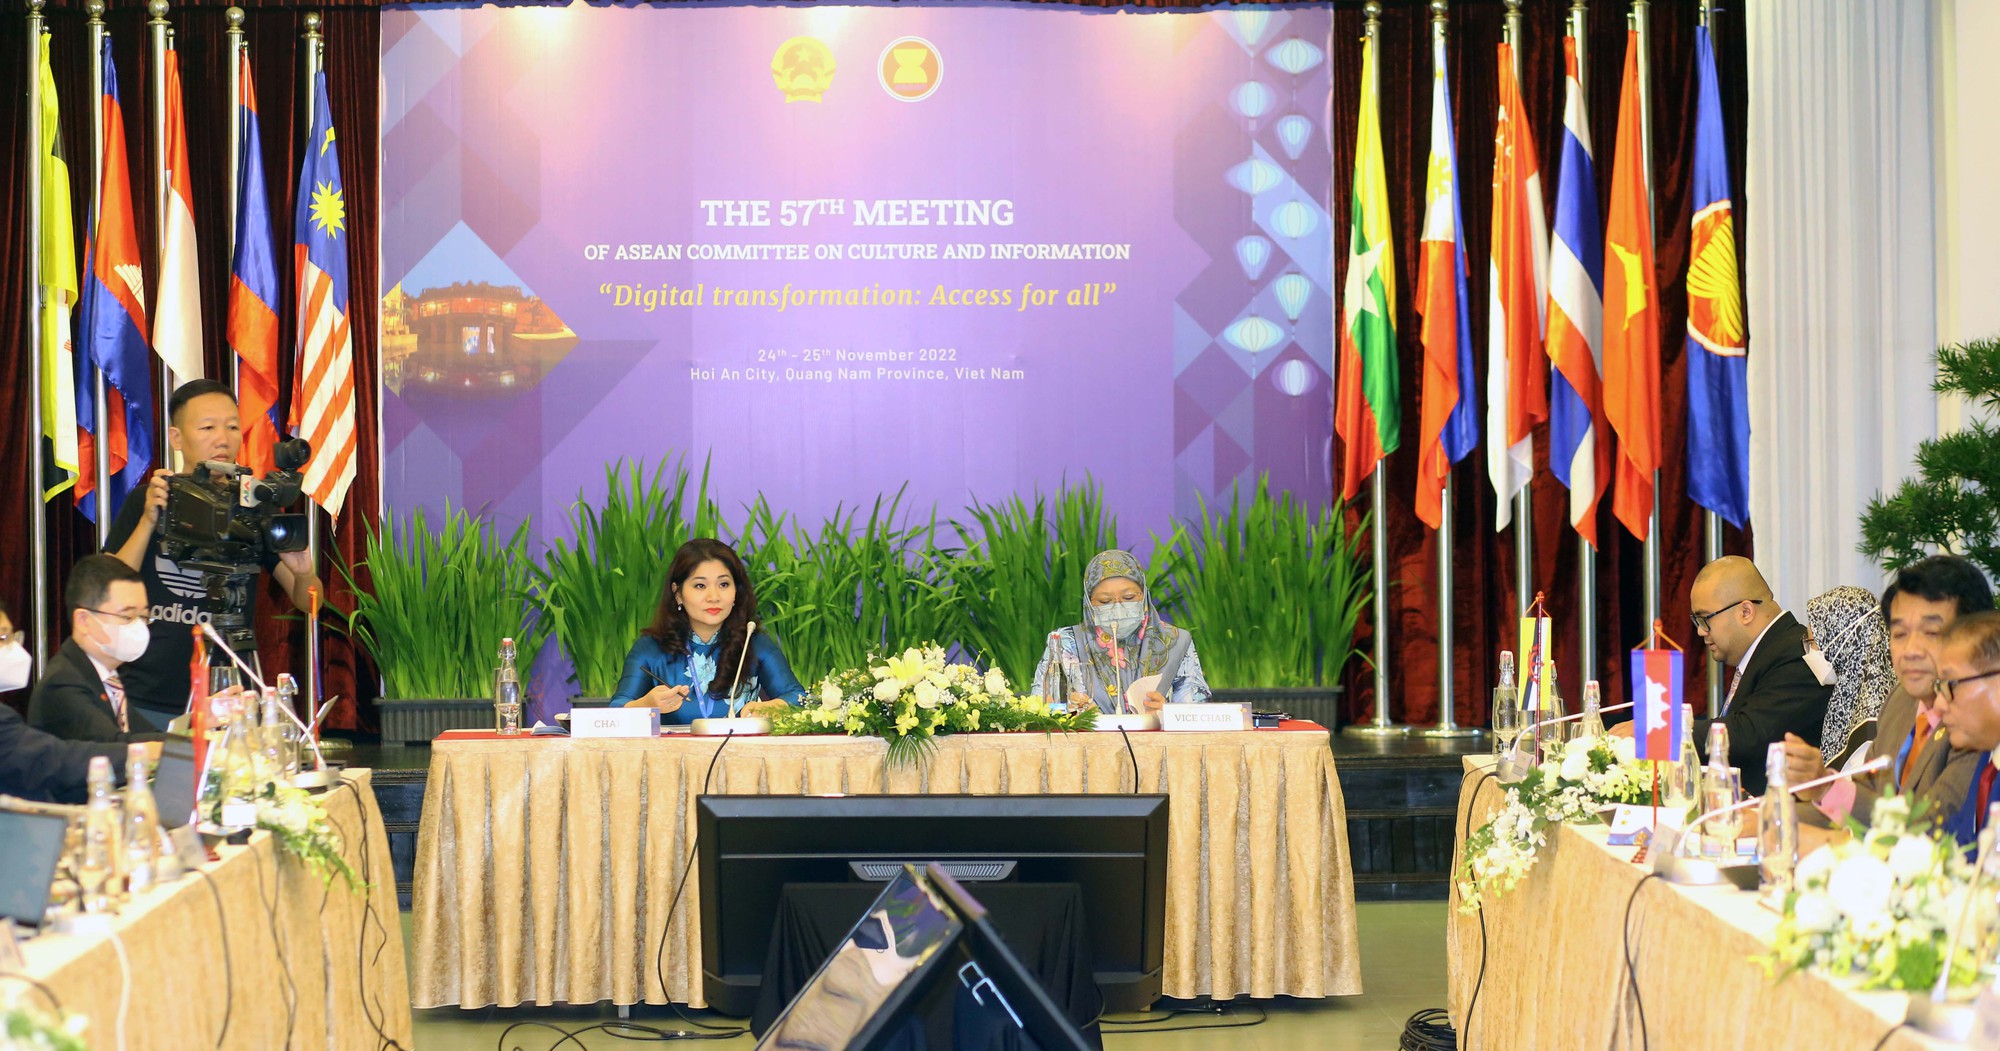 Tăng cường chuyển đổi số: Hướng đi mới trong hợp tác văn hóa, thông tin ASEAN - Ảnh 3.